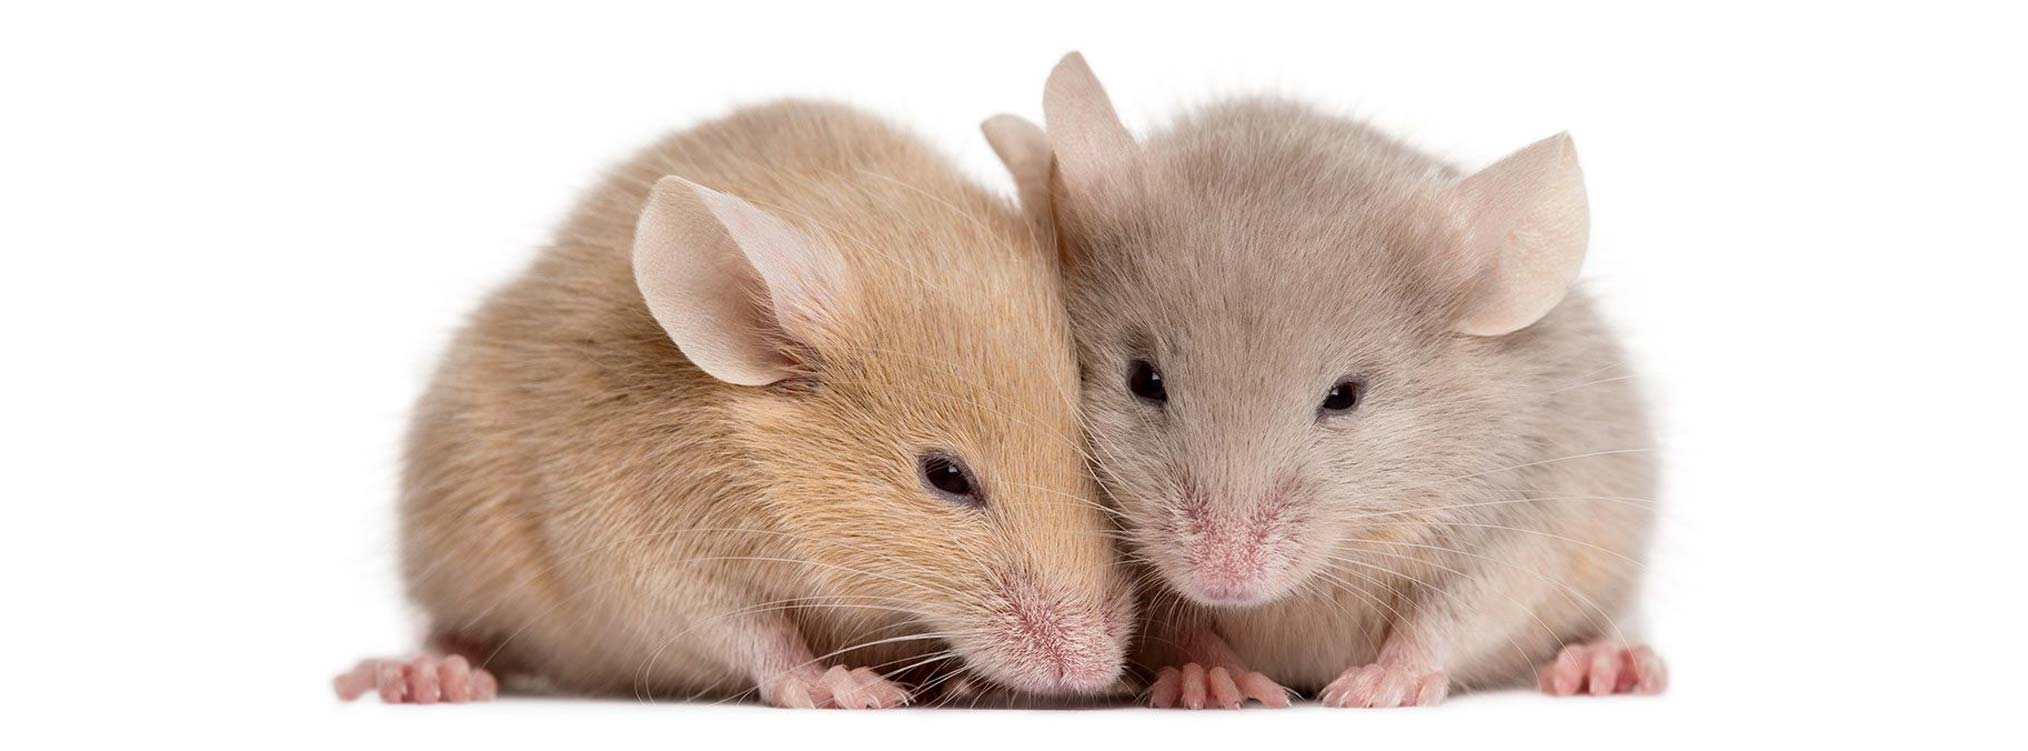 Liệu pháp tế bào gốc giúp chuột cái hiếm muộn có con bình thường, hy vọng mới cho con người?